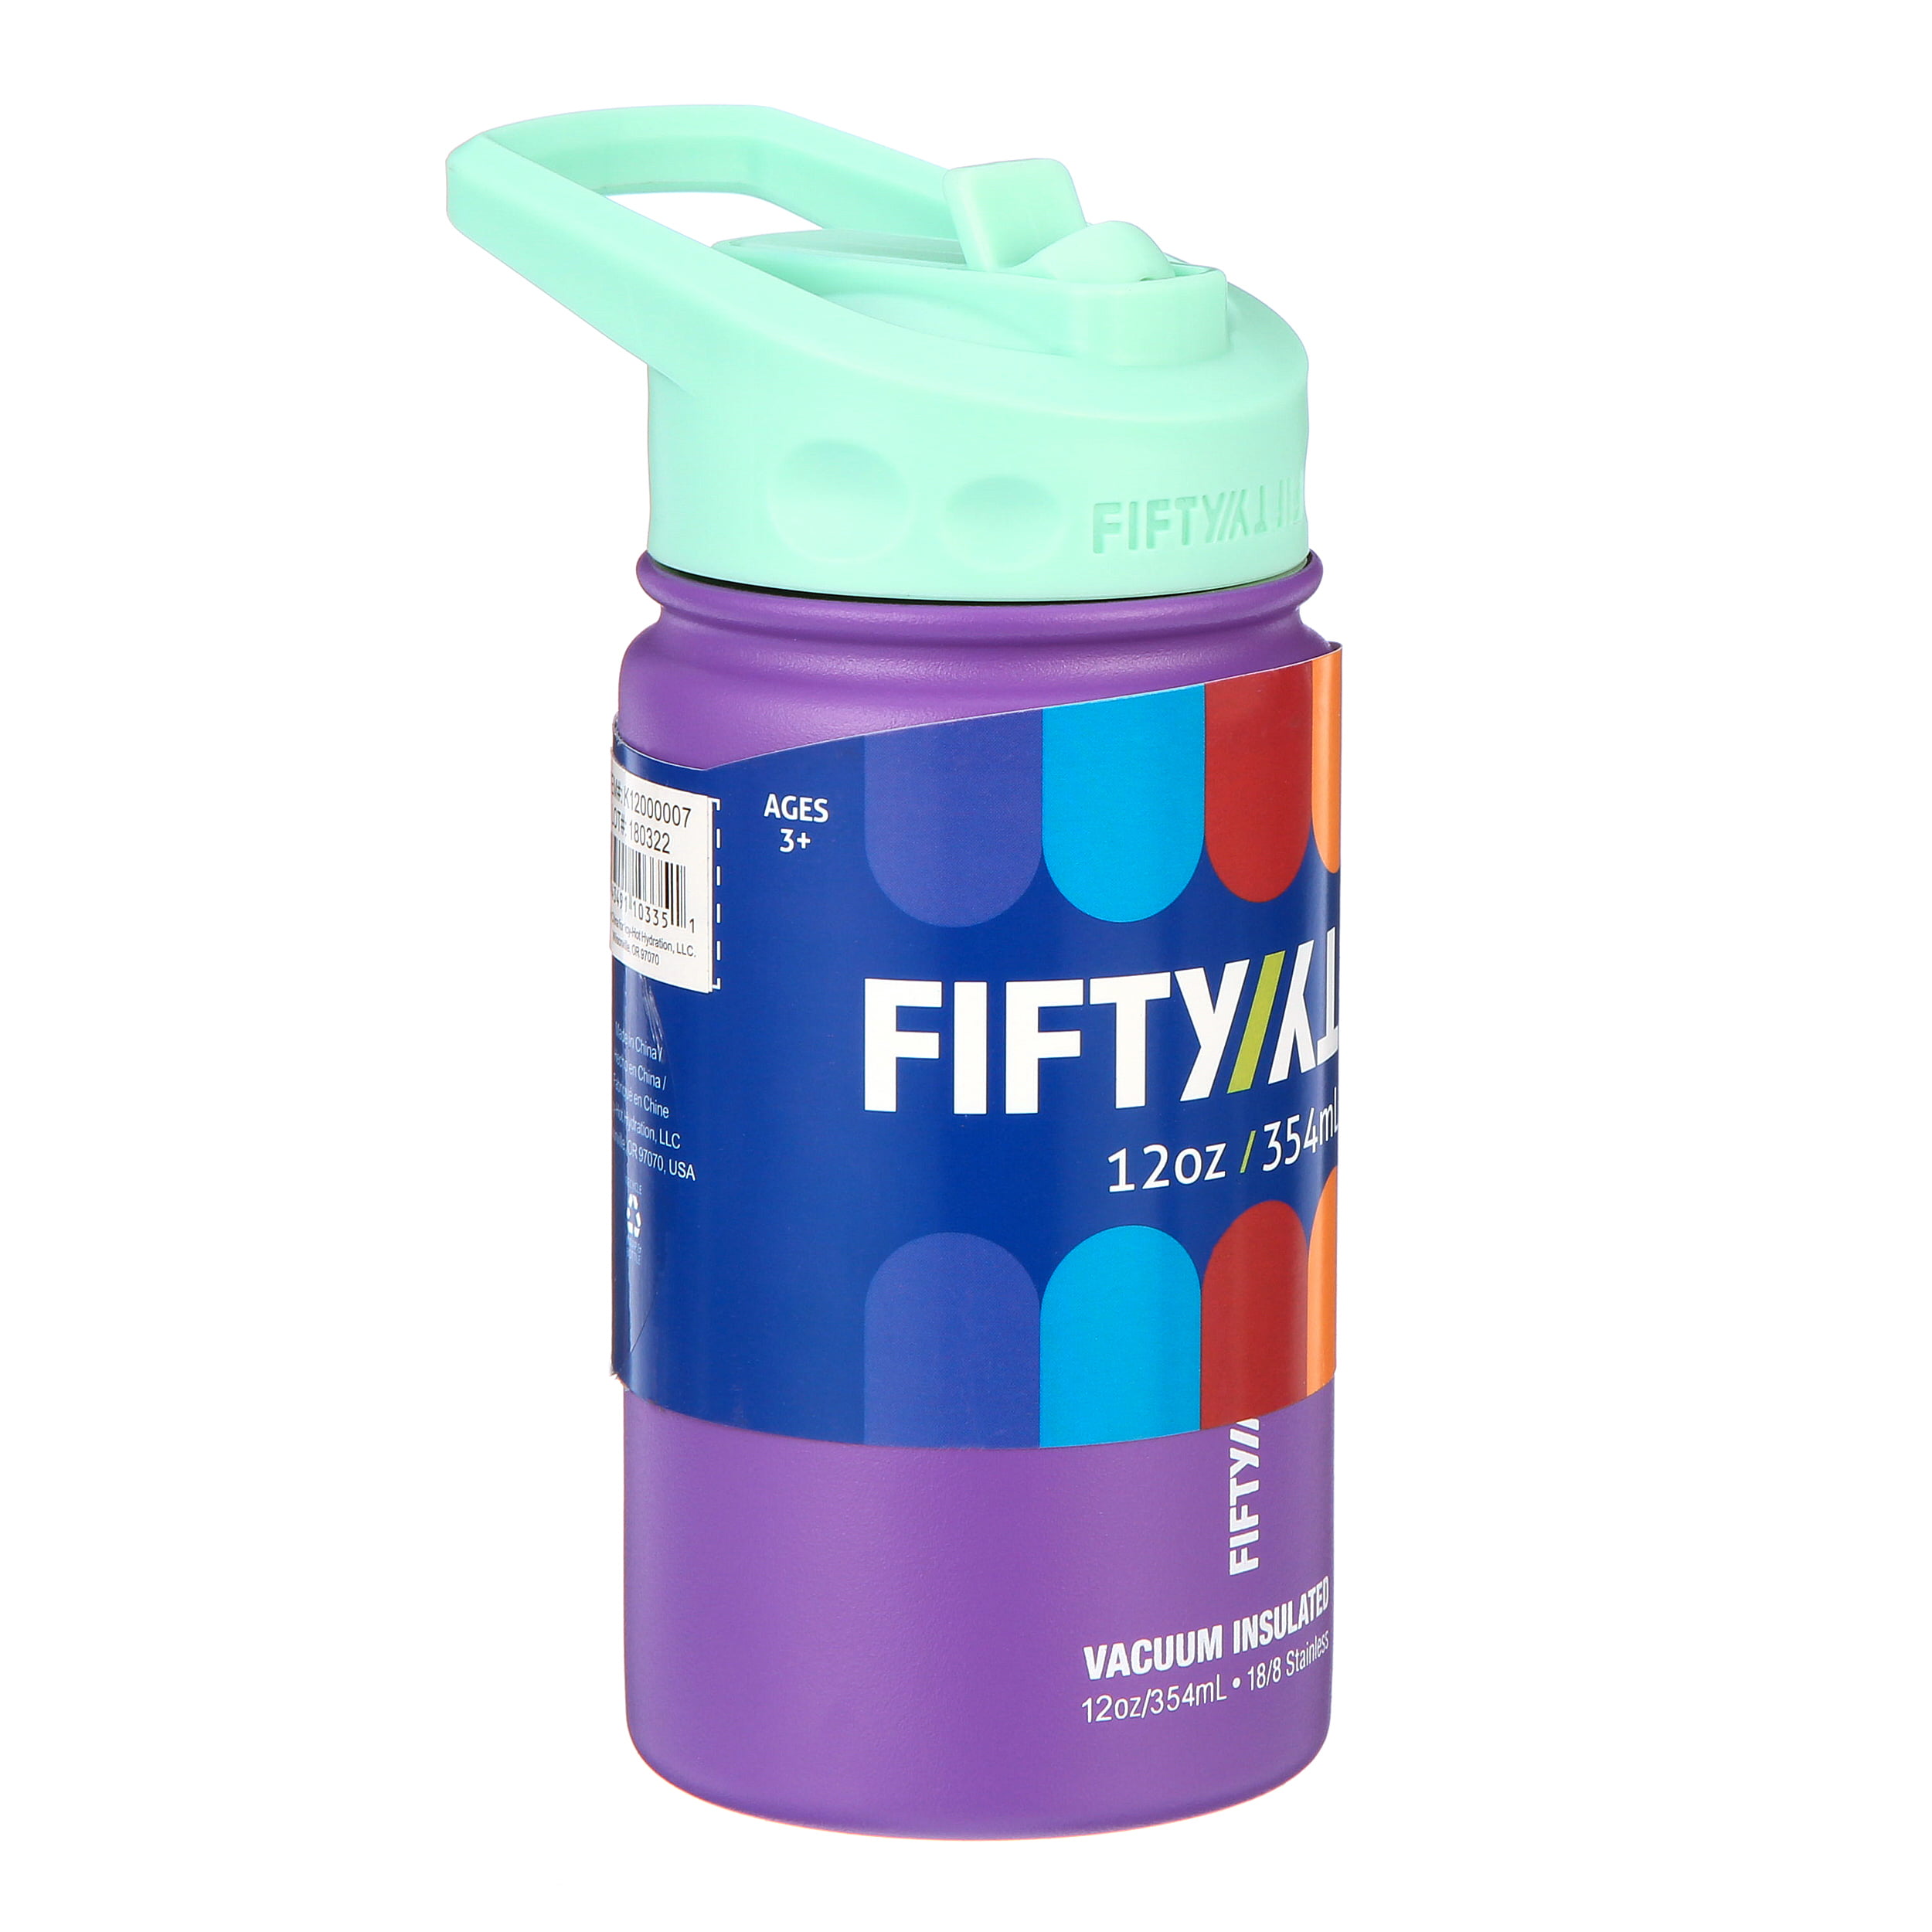 12oz Kids Bottle with Straw Cap - Unicorn - FIFTY/FIFTY®– FIFTY/FIFTY  Bottles